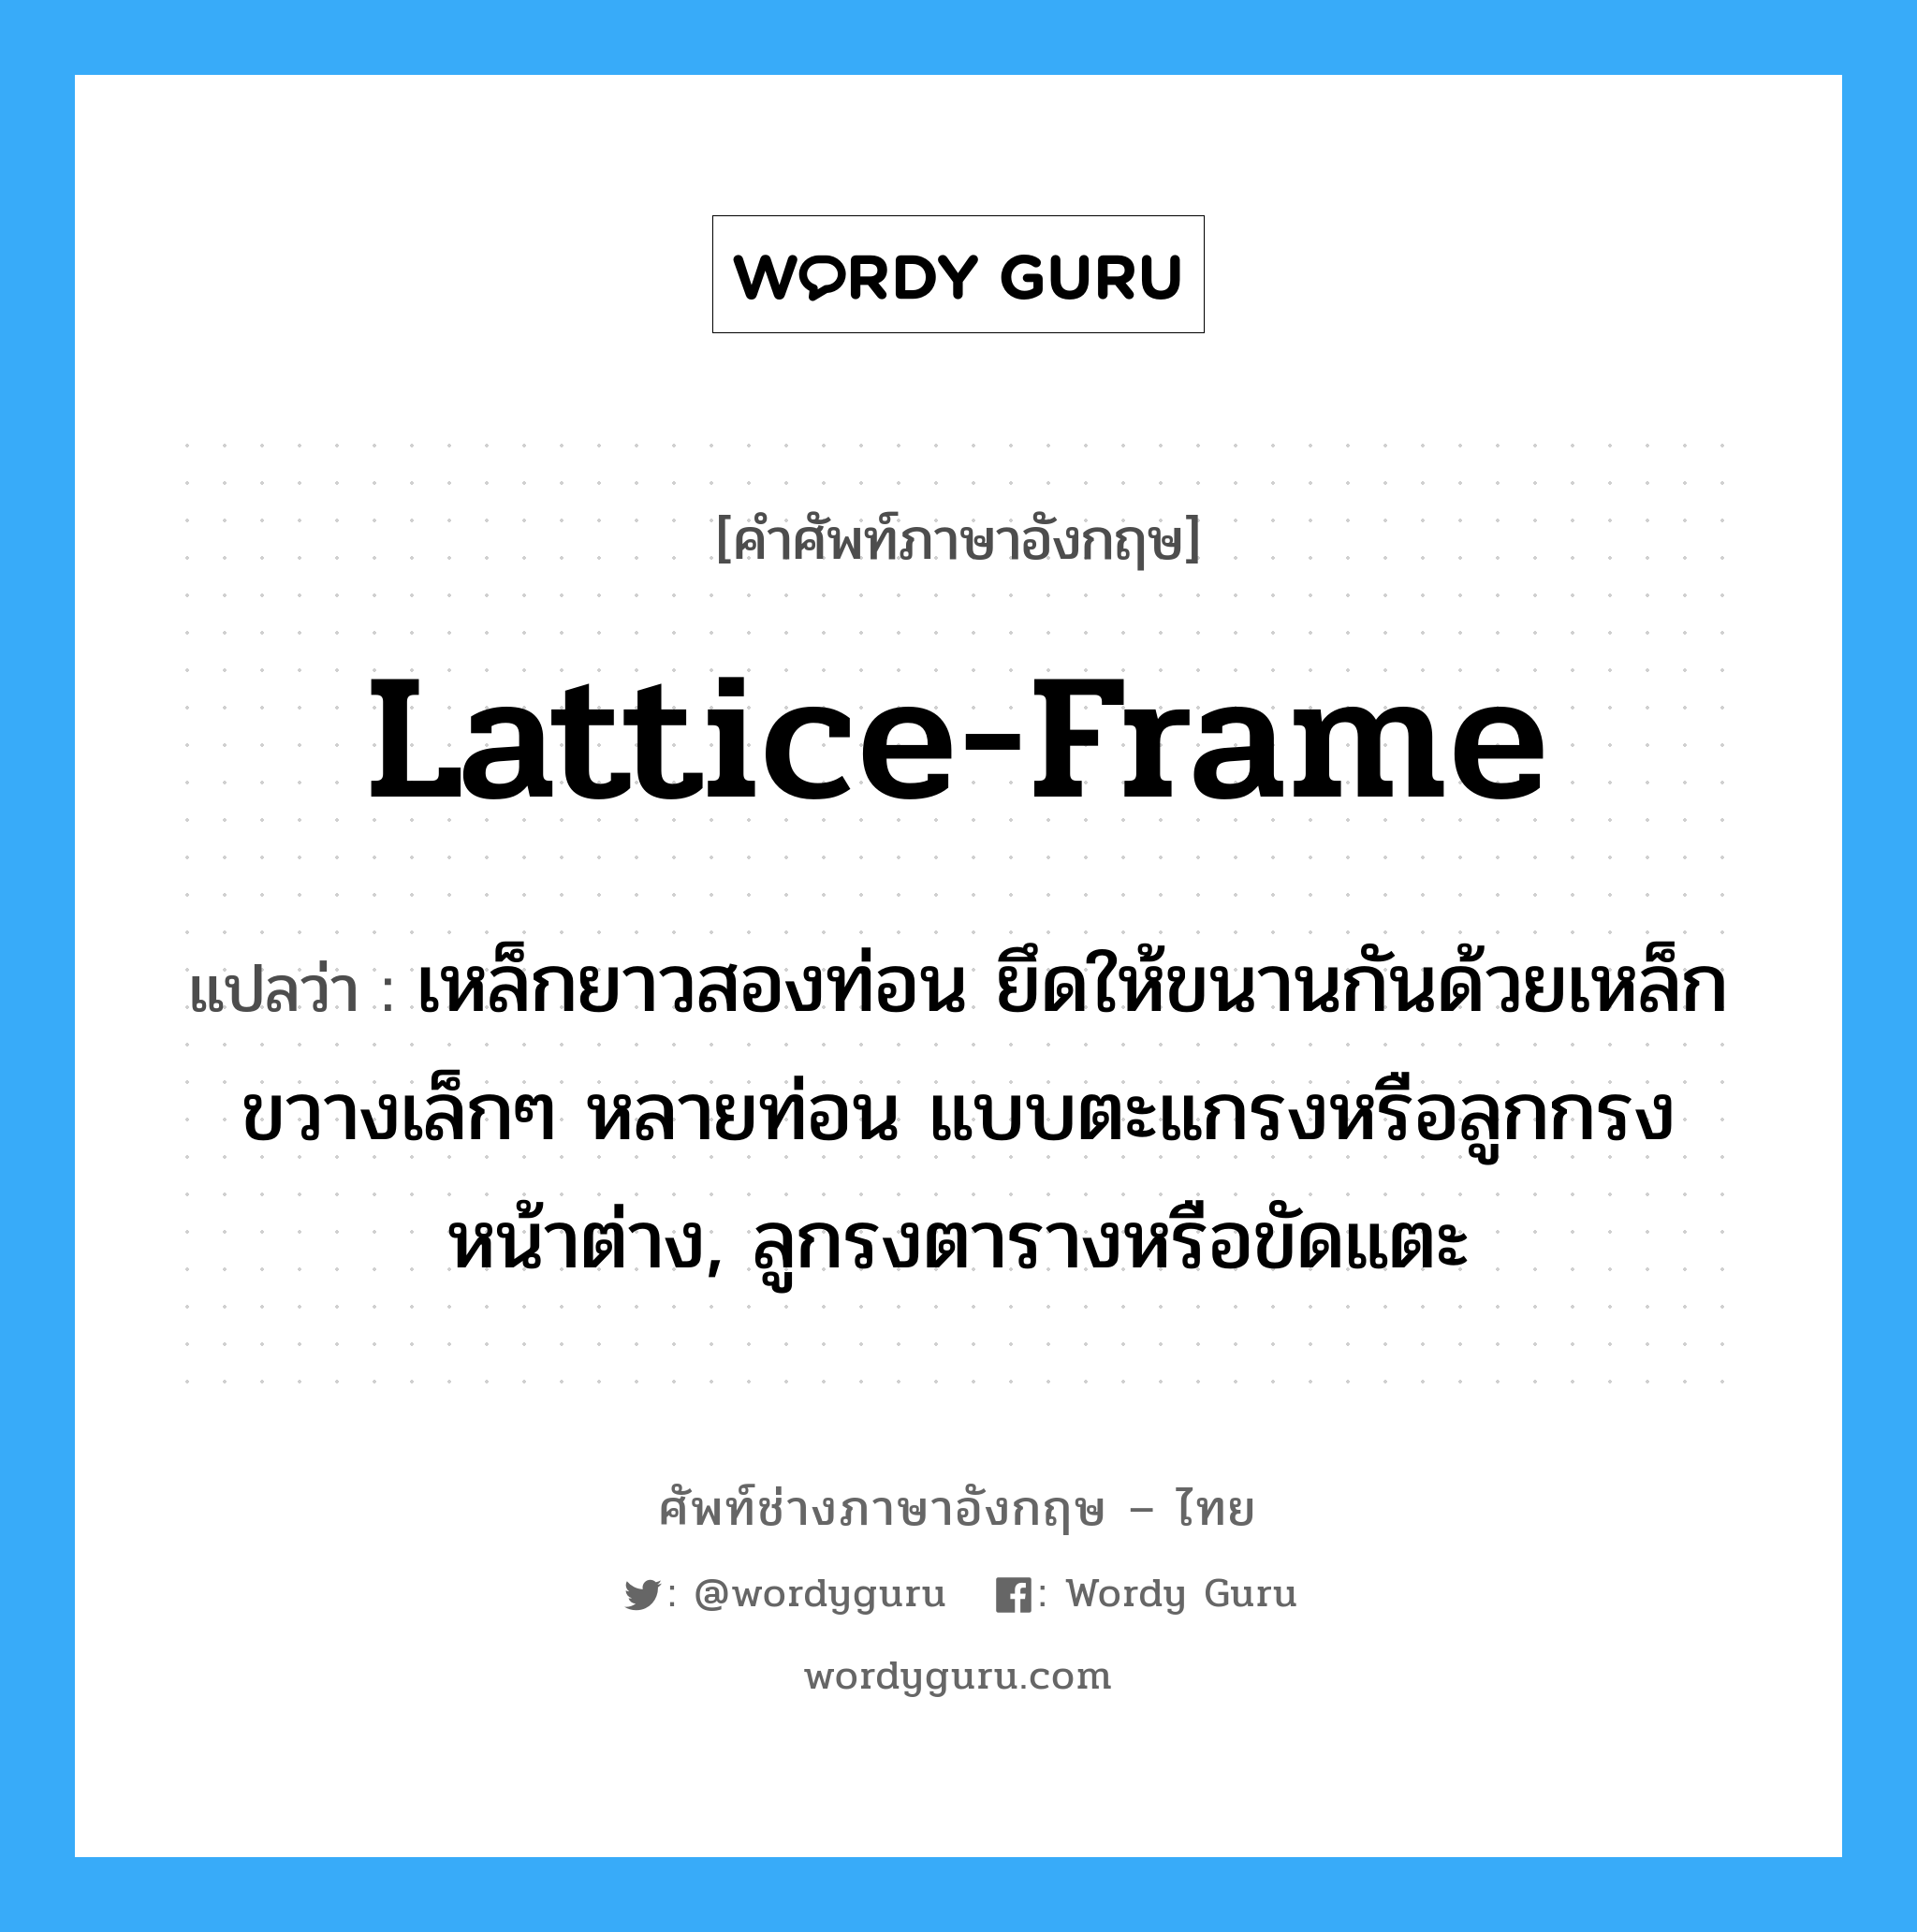 lattice-frame แปลว่า?, คำศัพท์ช่างภาษาอังกฤษ - ไทย lattice-frame คำศัพท์ภาษาอังกฤษ lattice-frame แปลว่า เหล็กยาวสองท่อน ยึดให้ขนานกันด้วยเหล็กขวางเล็กๆ หลายท่อน แบบตะแกรงหรือลูกกรงหน้าต่าง, ลูกรงตารางหรือขัดแตะ